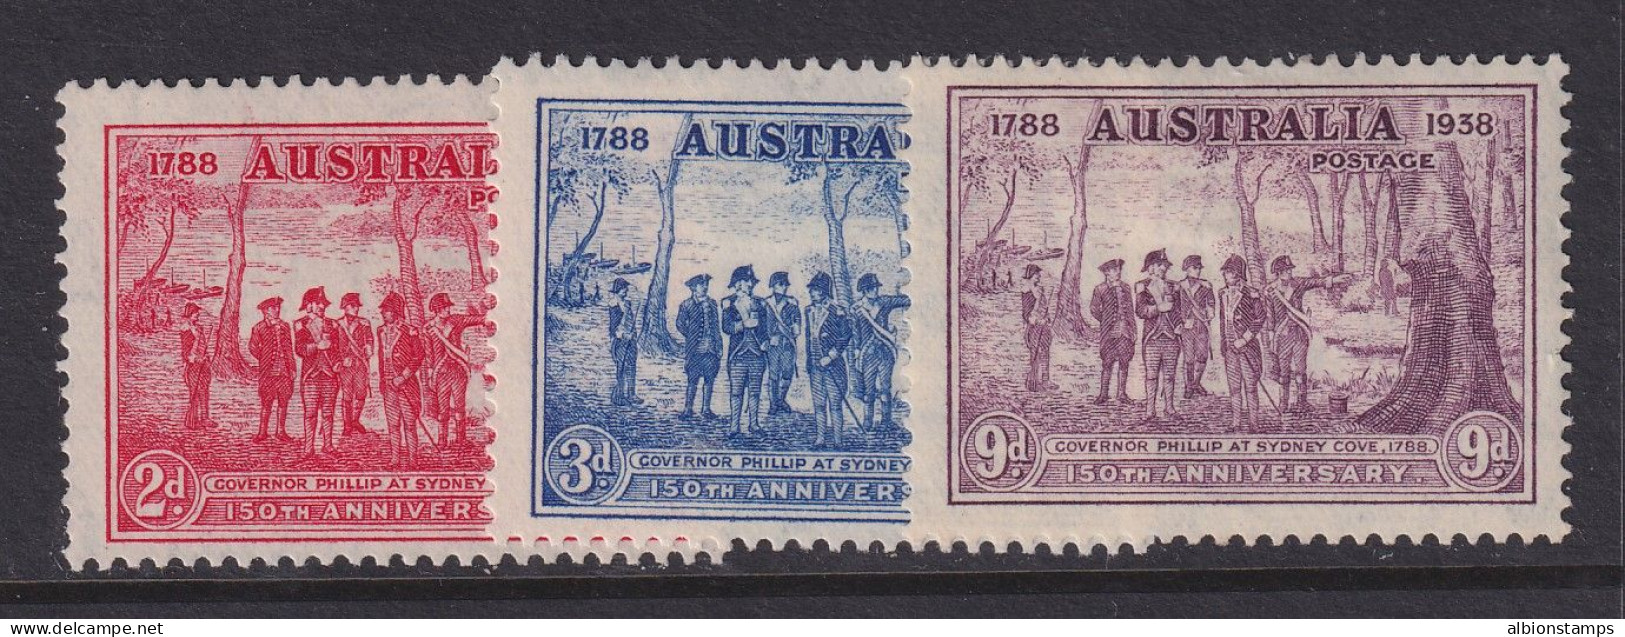 Australia, Scott 163-165 (SG 193-195), MHR - Ungebraucht